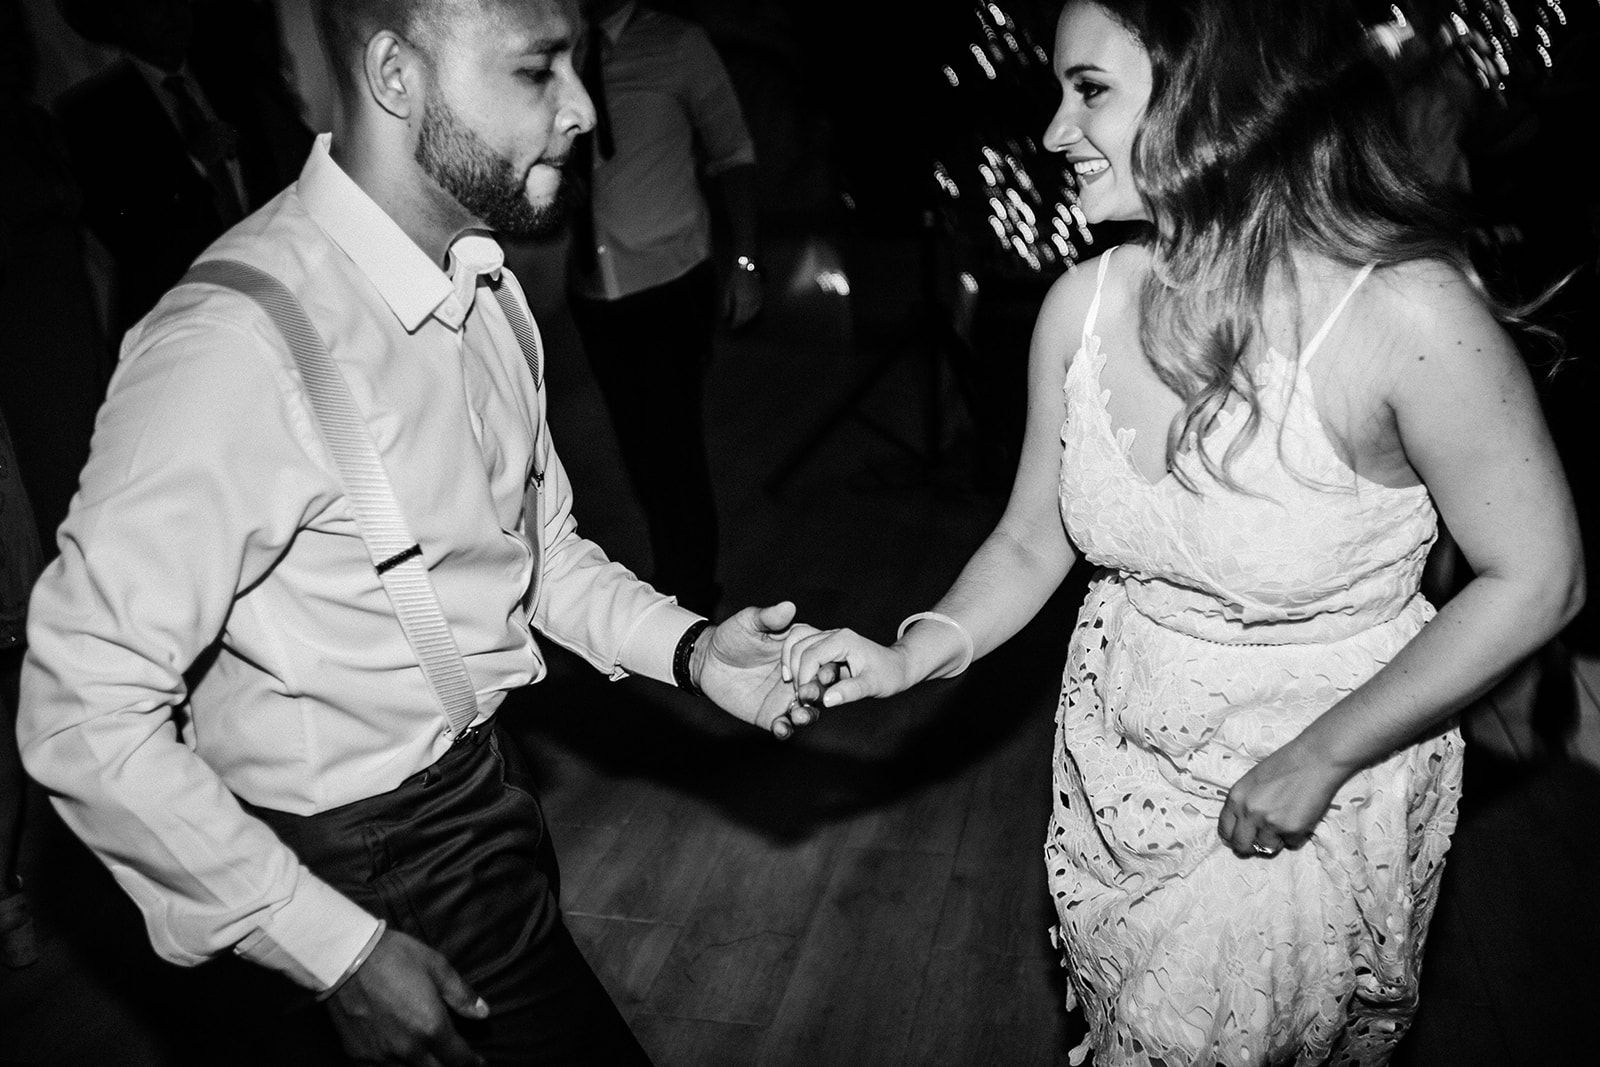 wedding couple dancing salsa